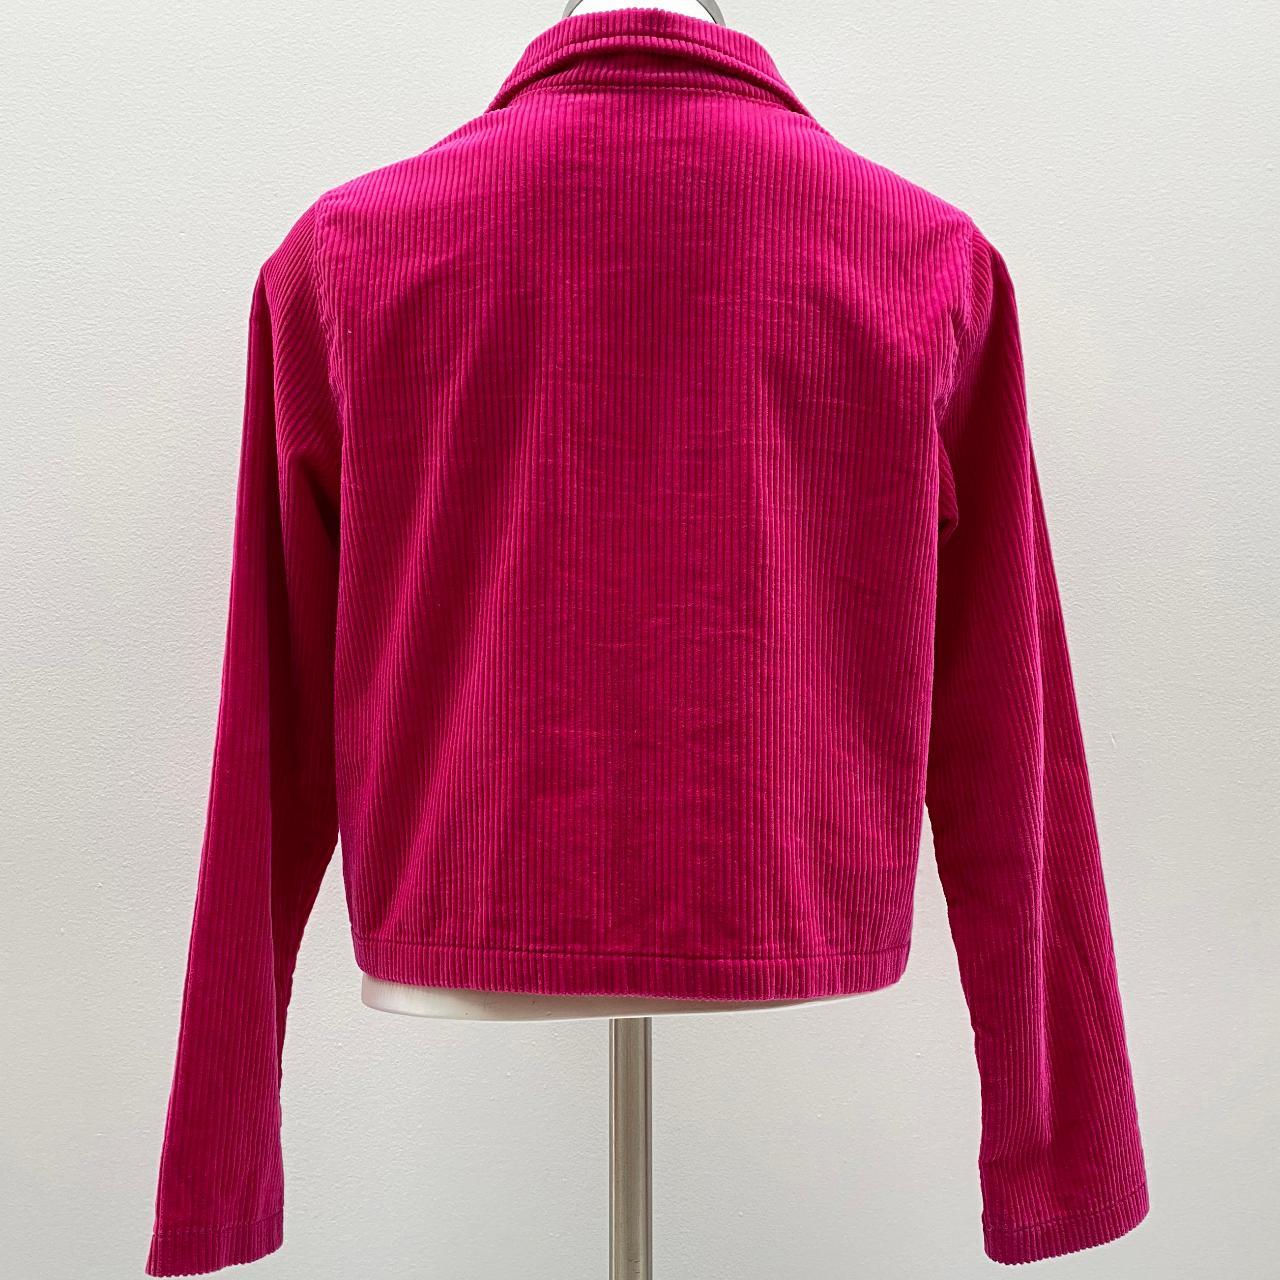 Product Image 4 - Fuchsia velvet jacket size XS/S
Hot